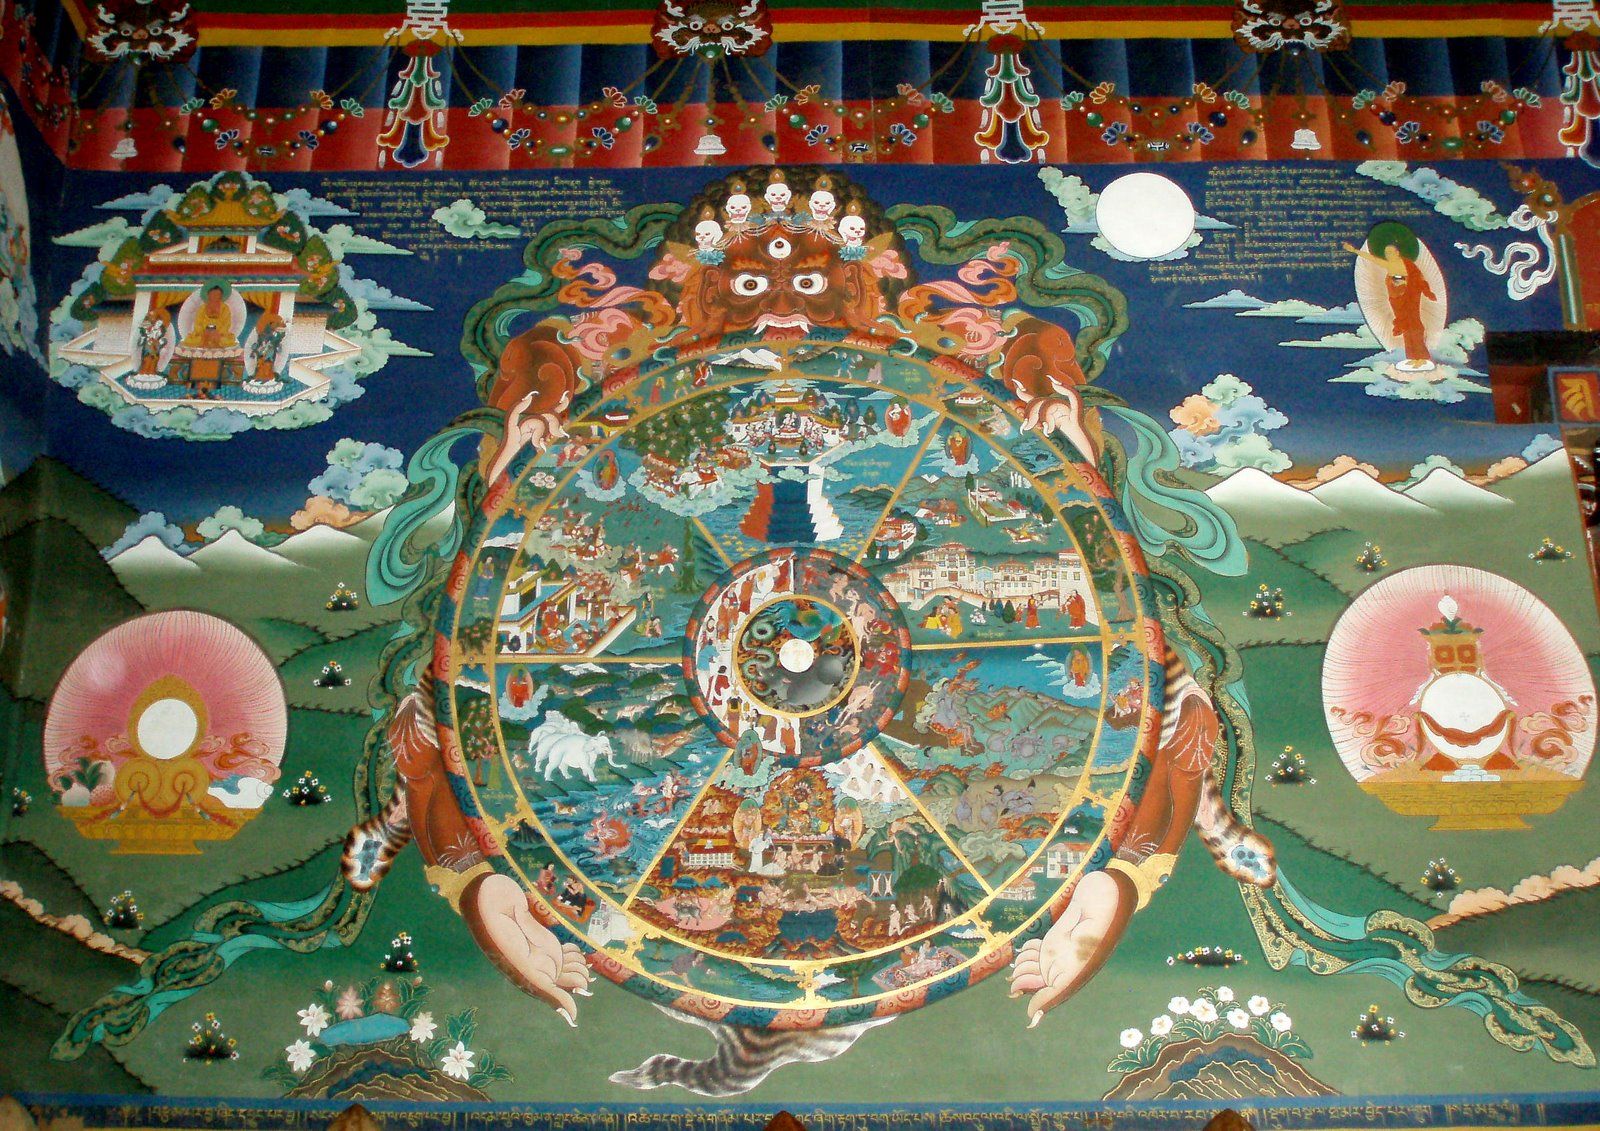 Bhavachakra, the Wheel of Becoming